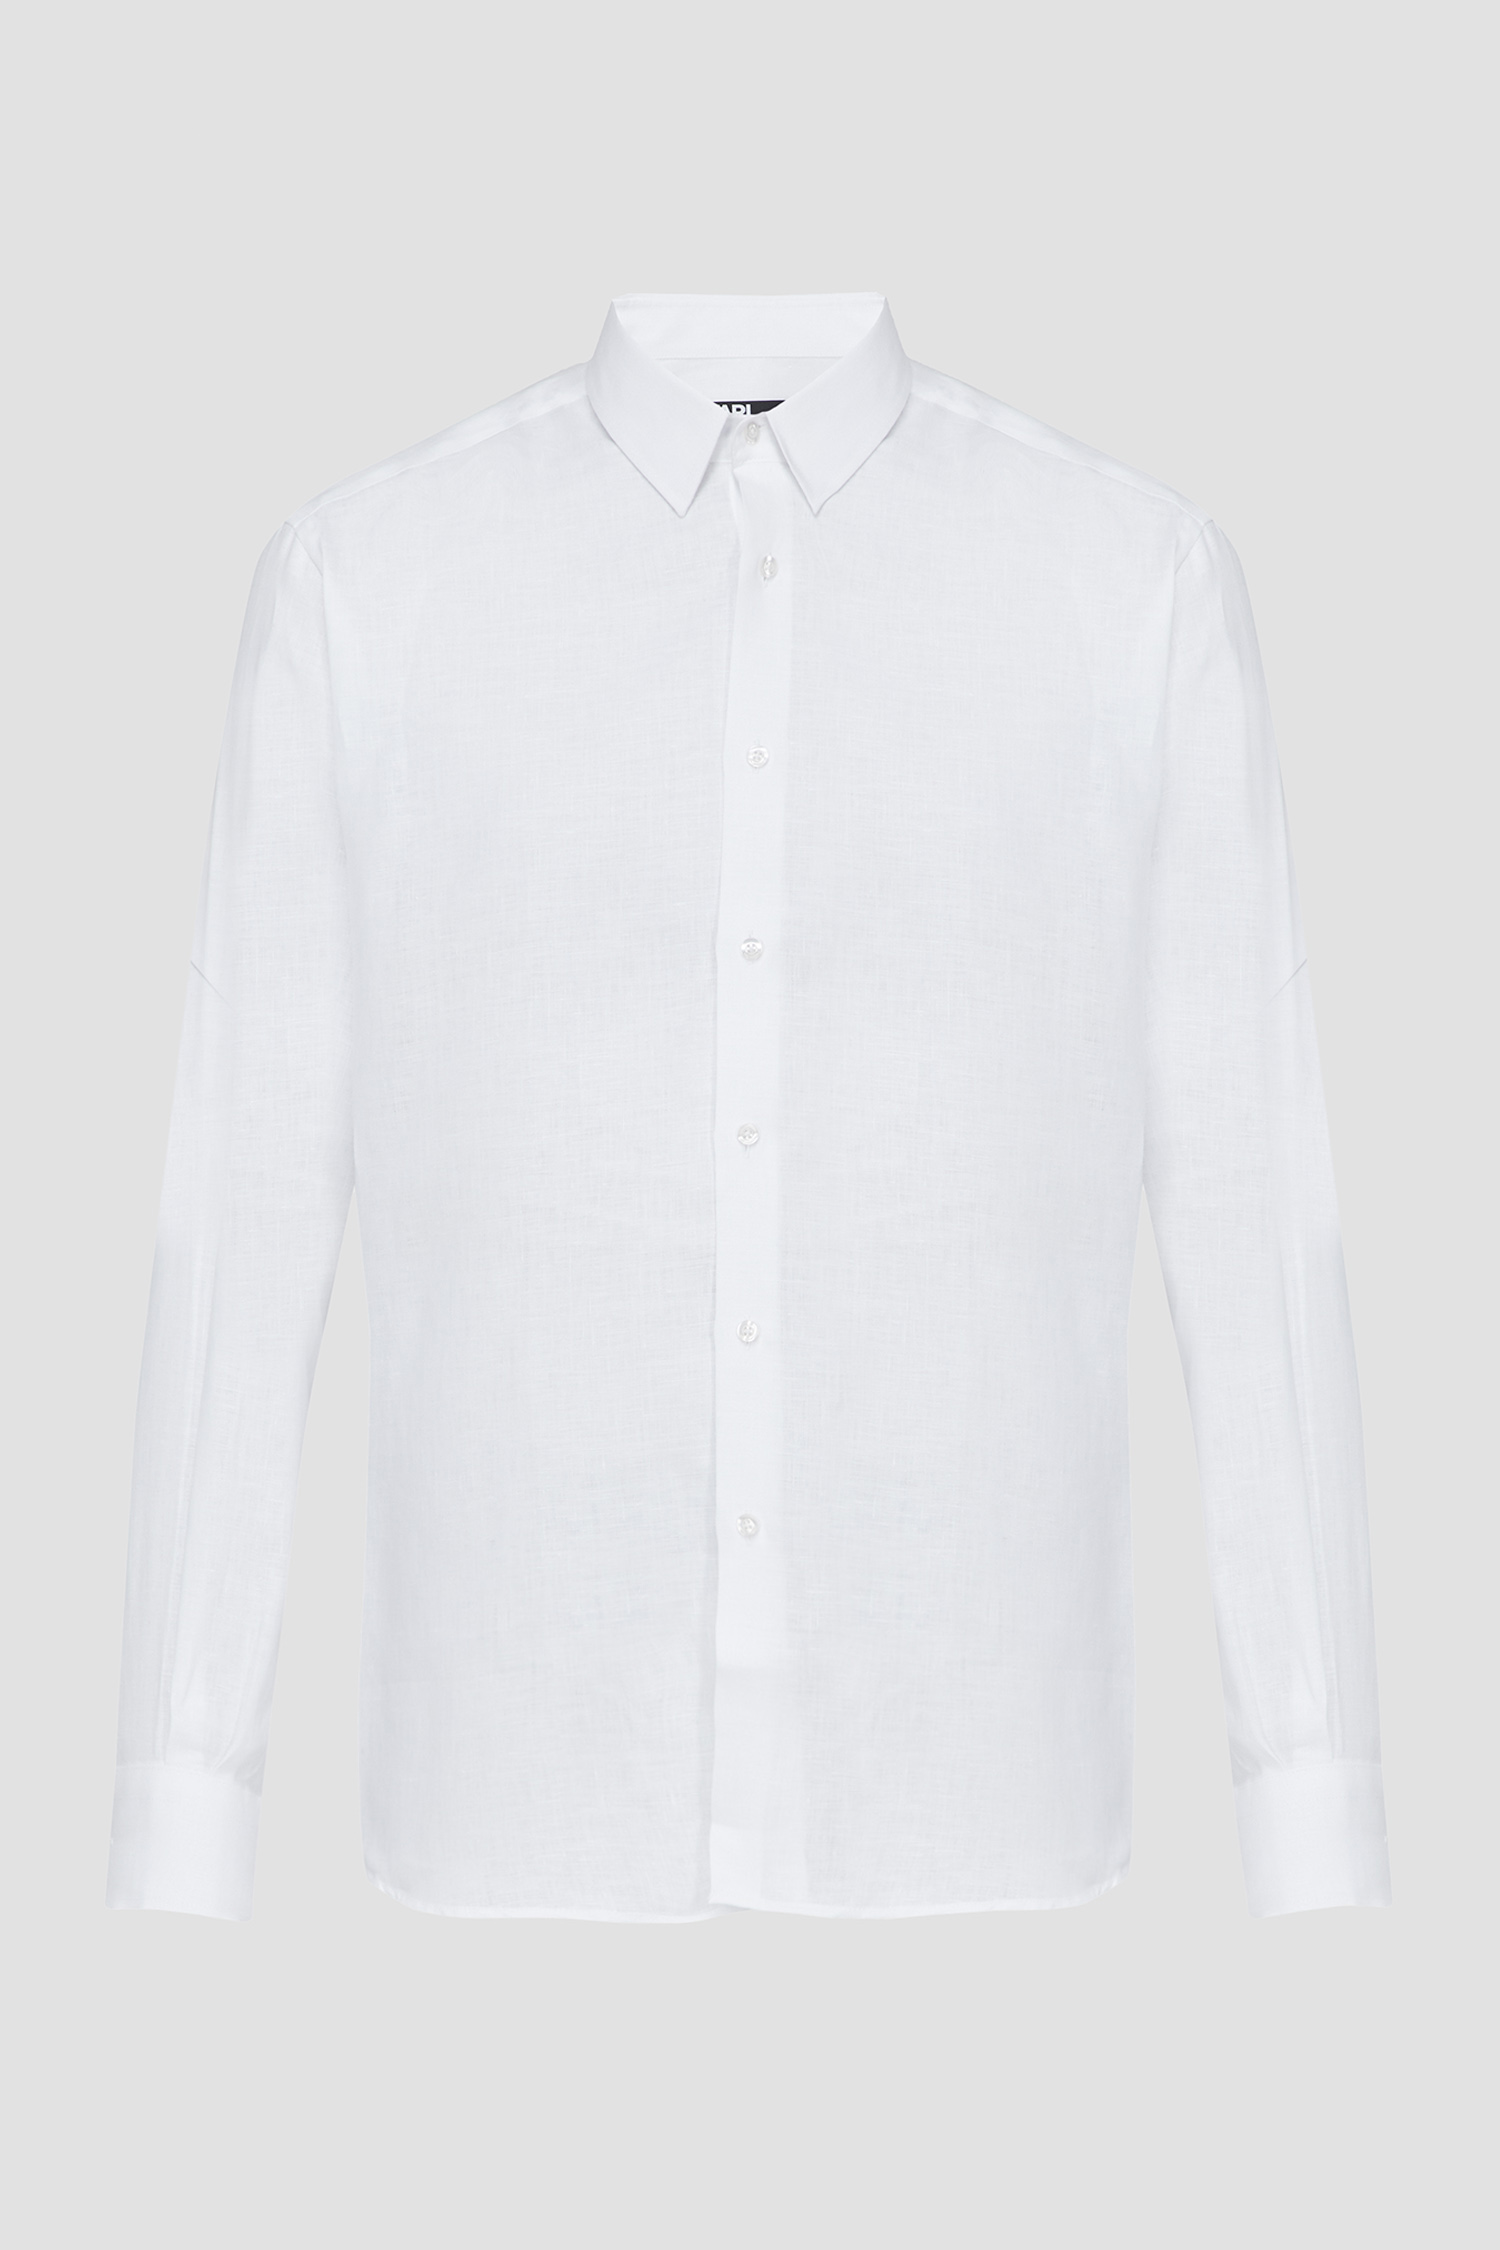 Мужская белая льняная рубашка Karl Lagerfeld 542667.605000;10